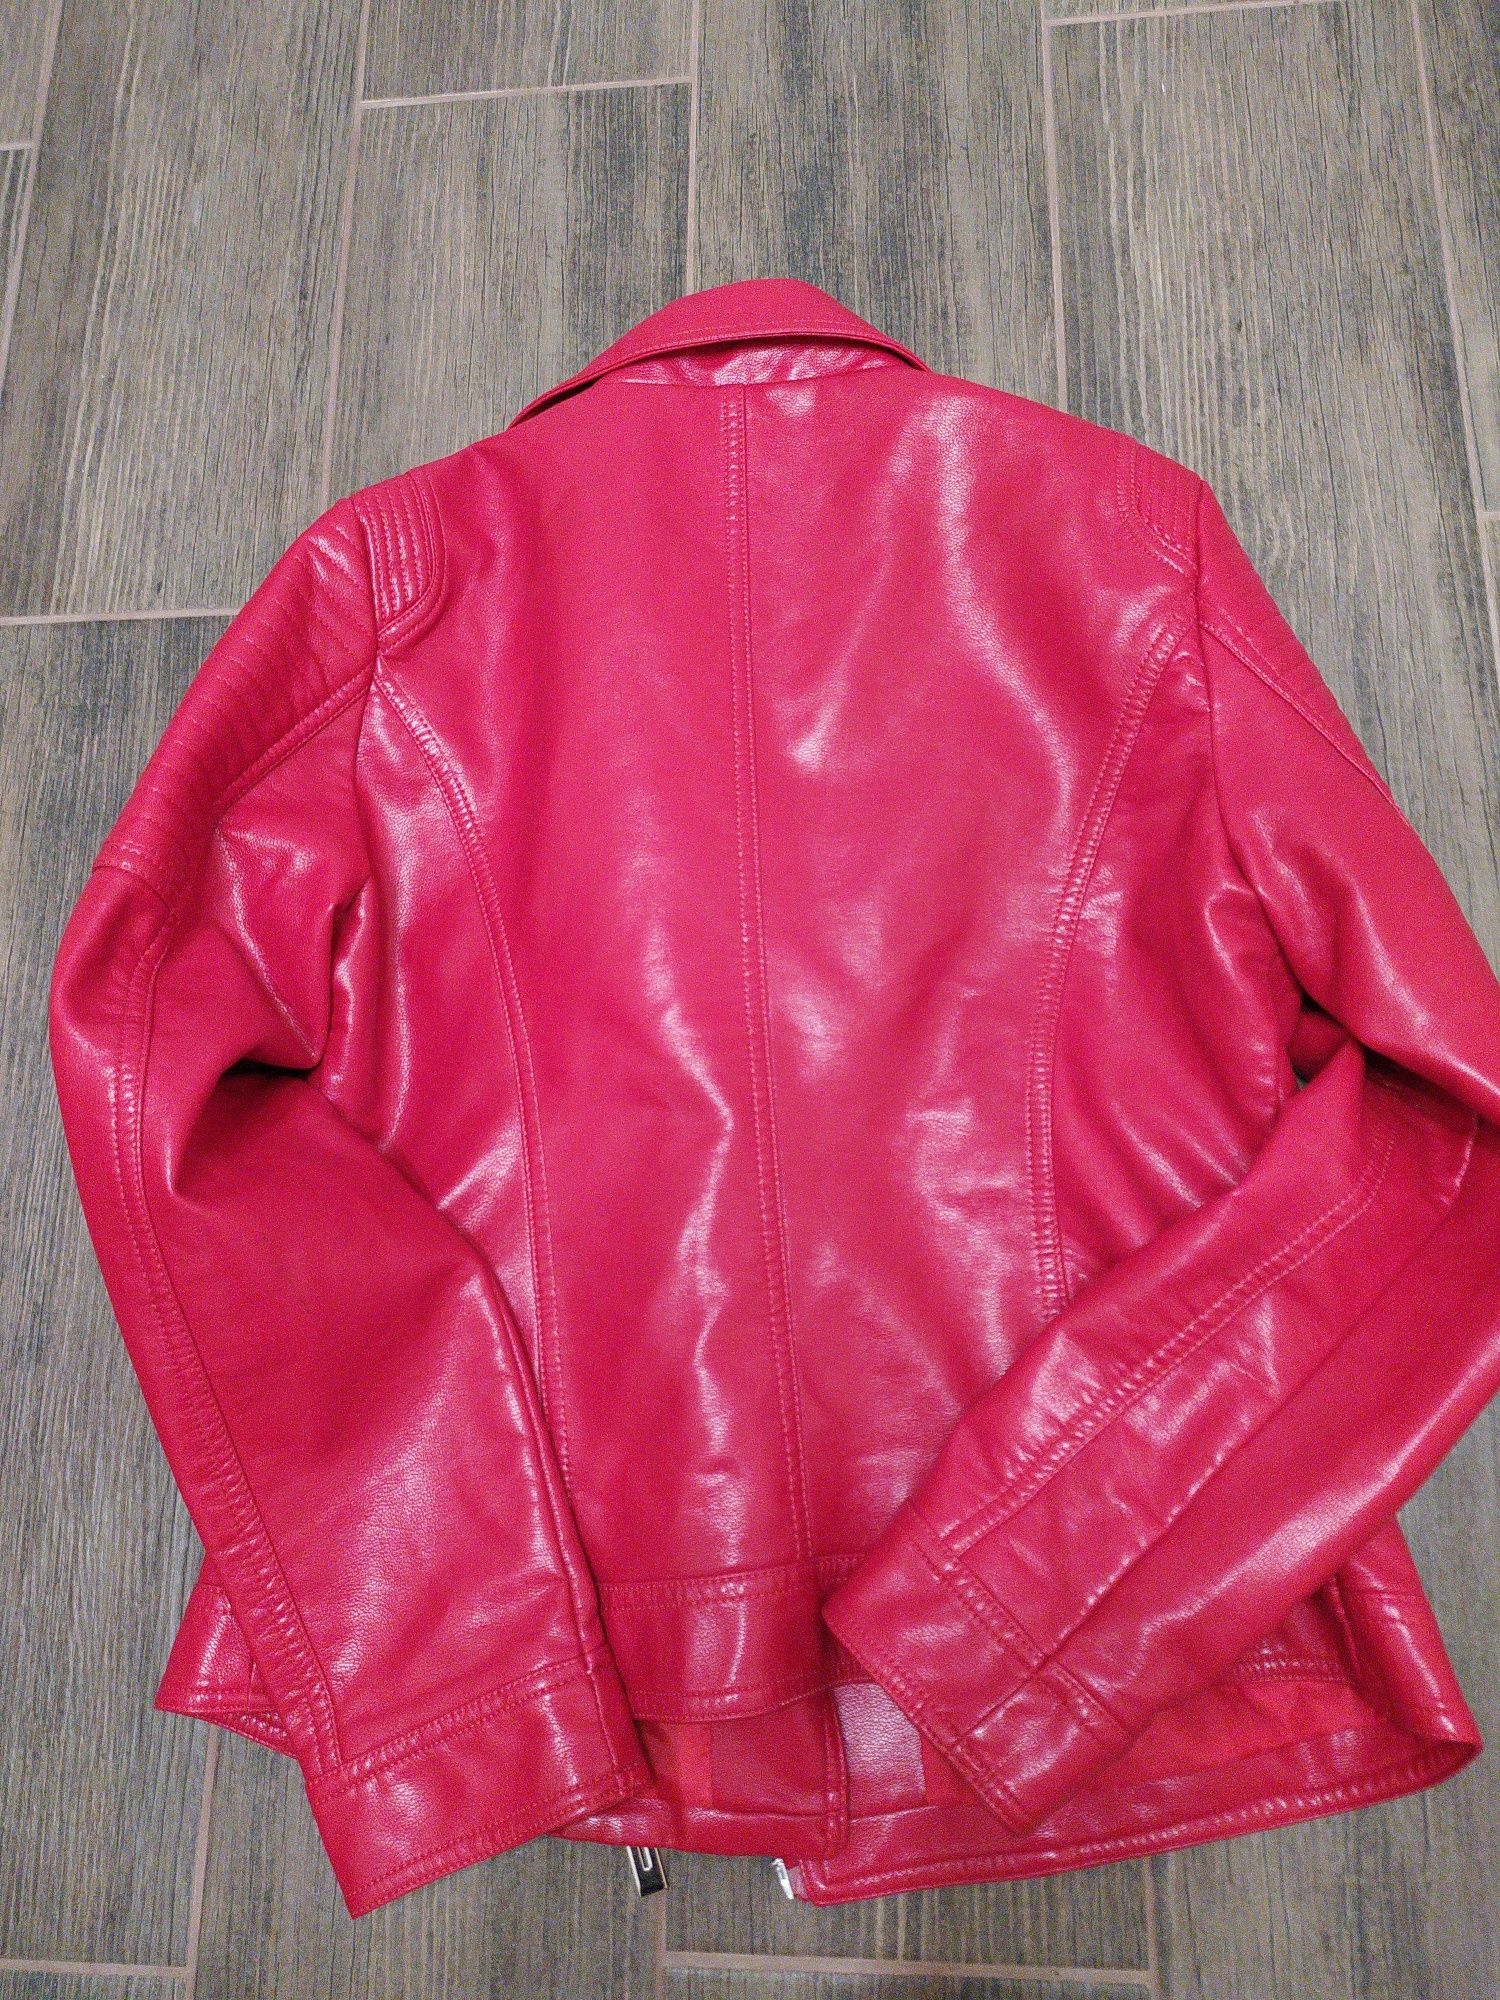 Куртка женская,XL